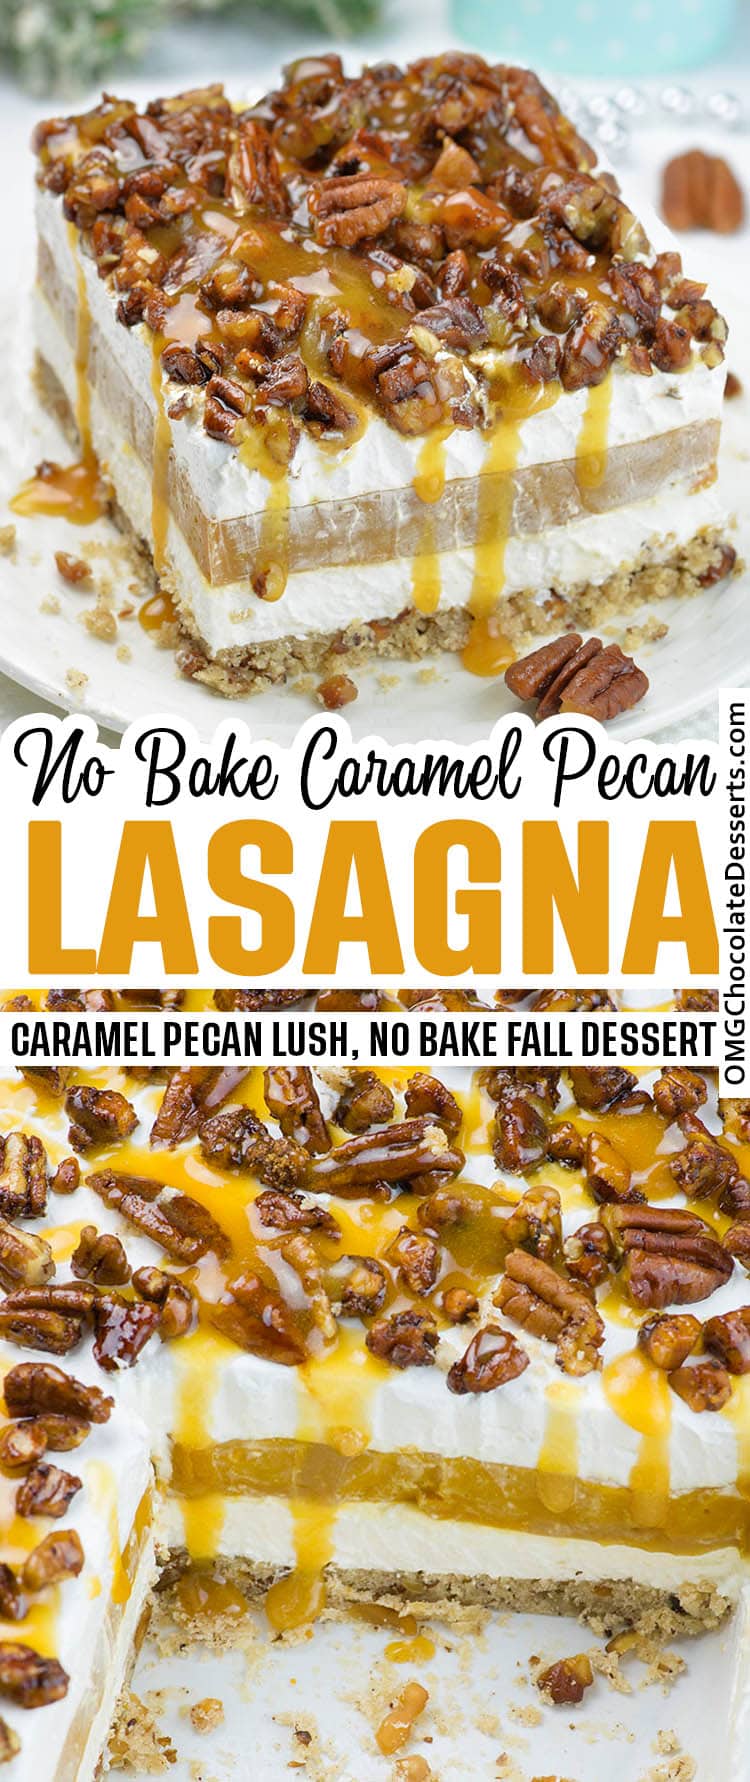 Caramel Pecan Lasagna